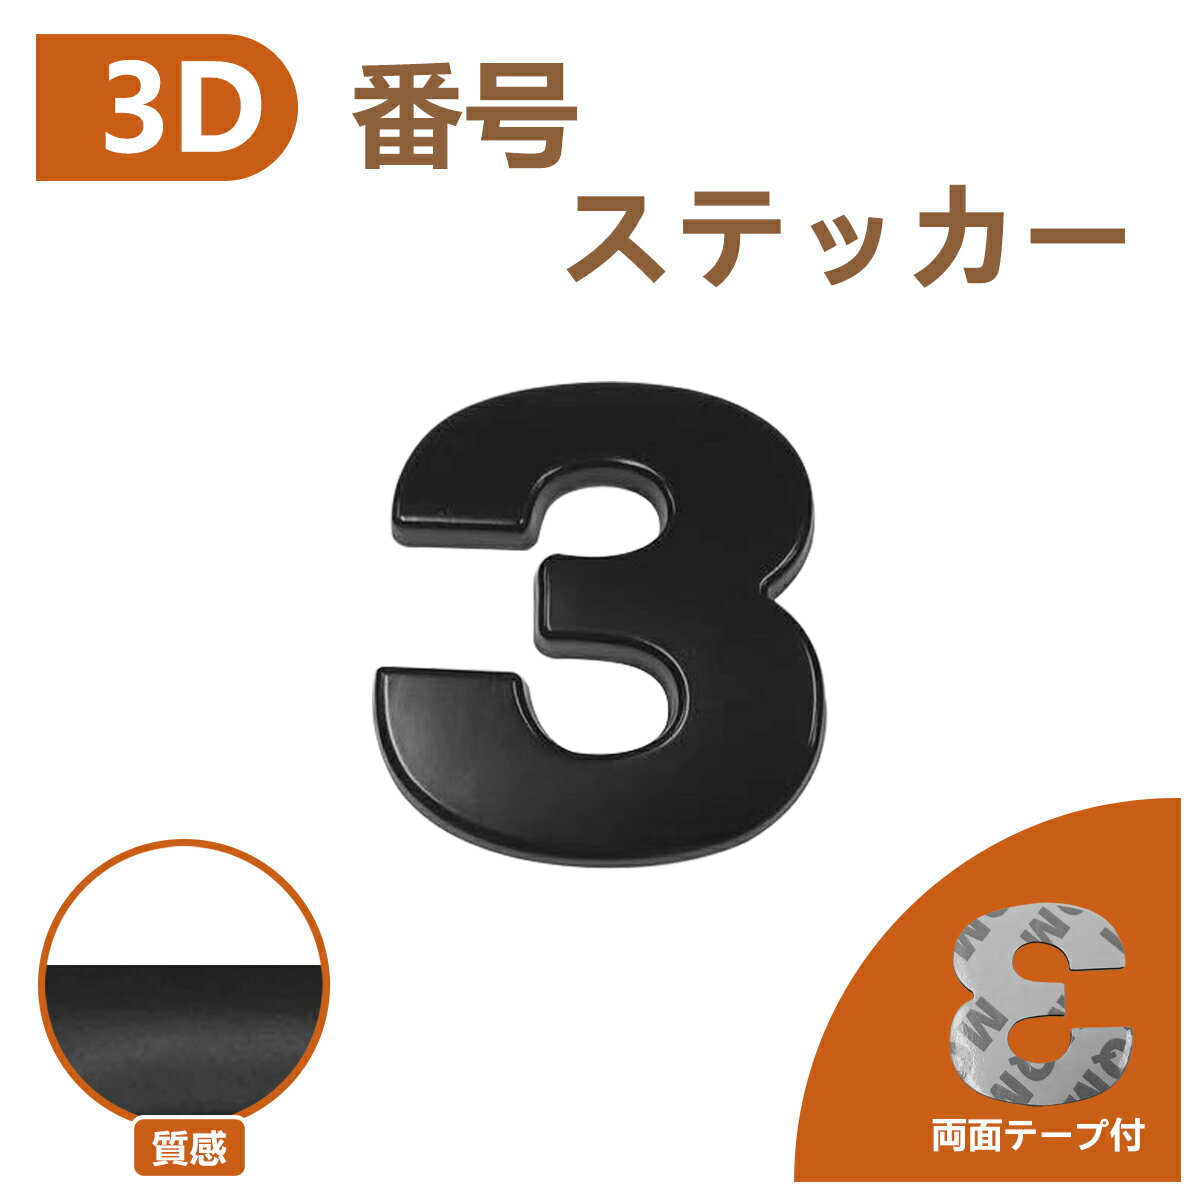 3D エンブレム 【3】 数字 文字 単品 車 バイク 金属 立体 マットブラック 黒 両面テープ ステッカー シール 送込